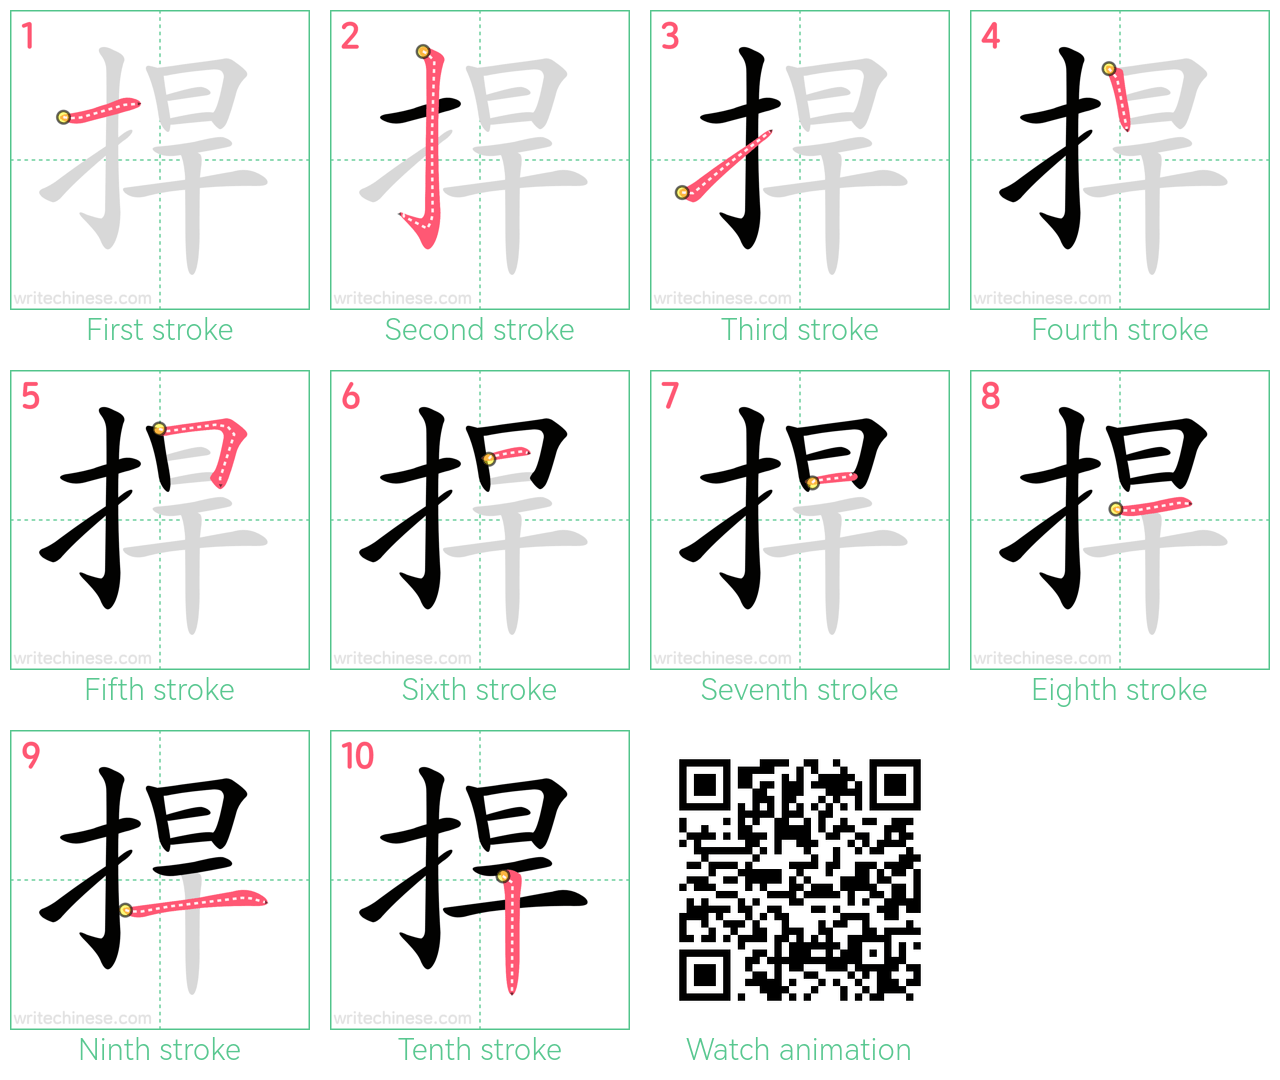 捍 step-by-step stroke order diagrams